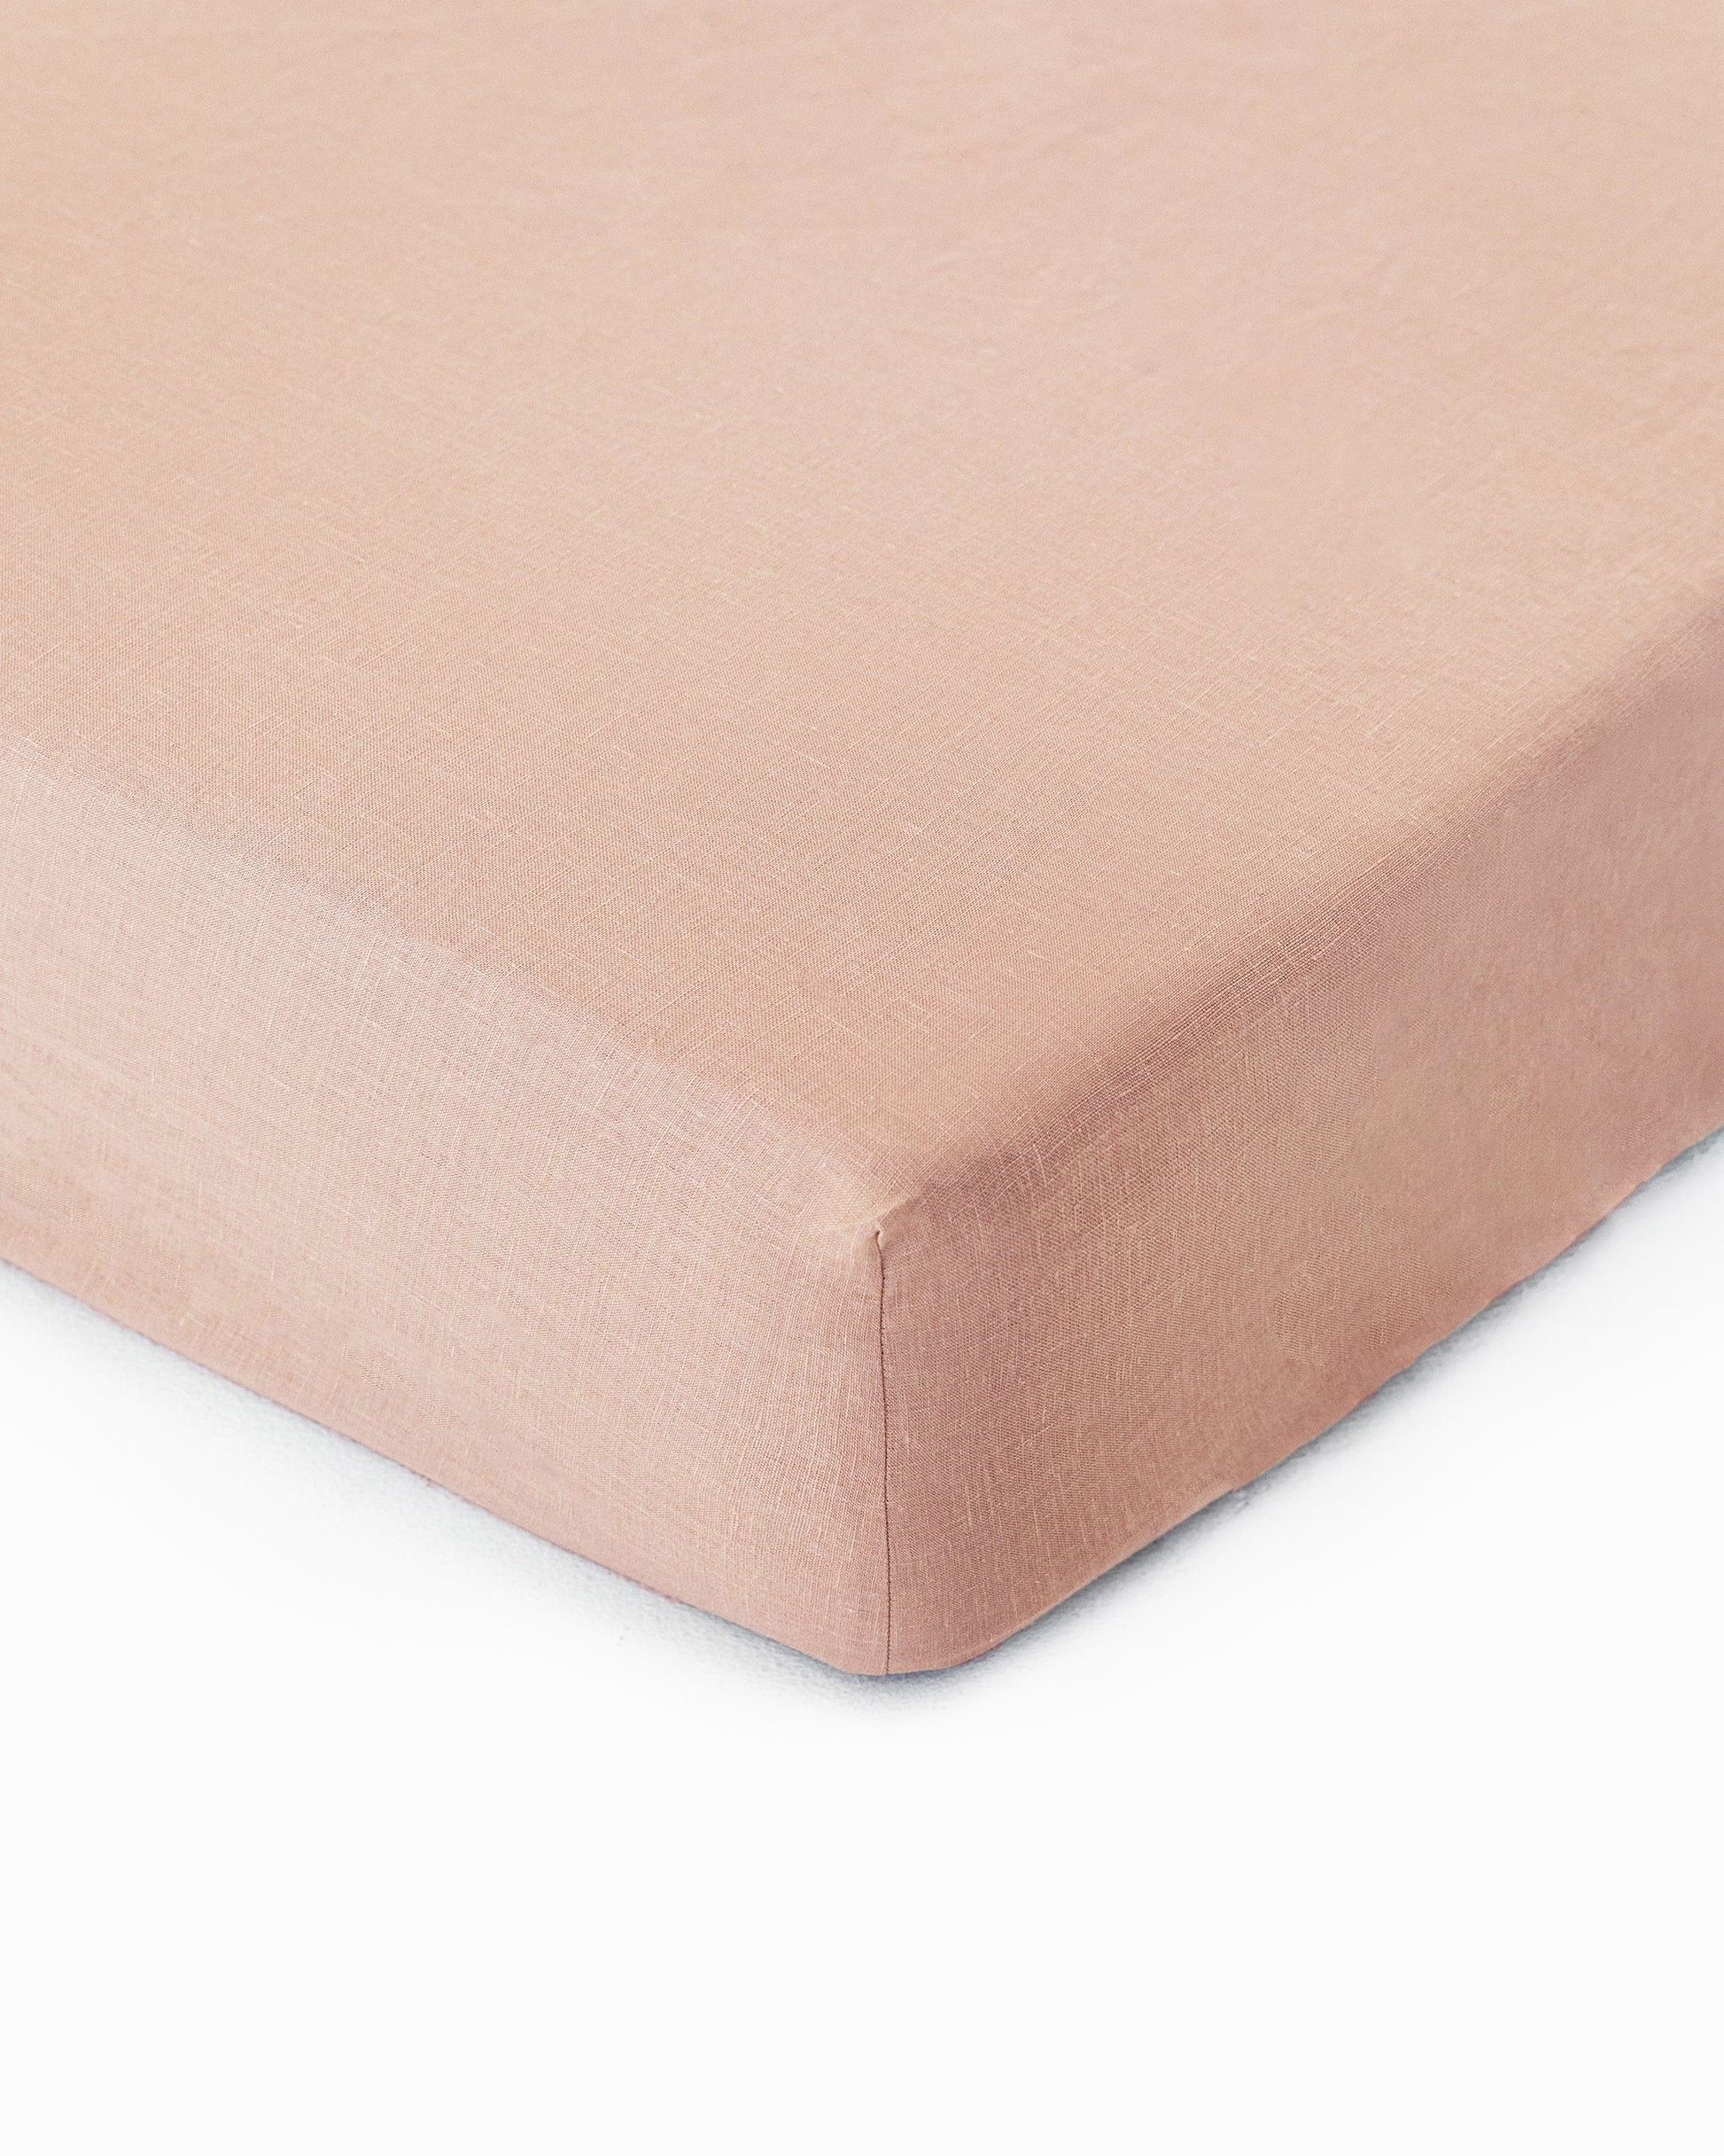 Peach linen fitted sheet - MagicLinen